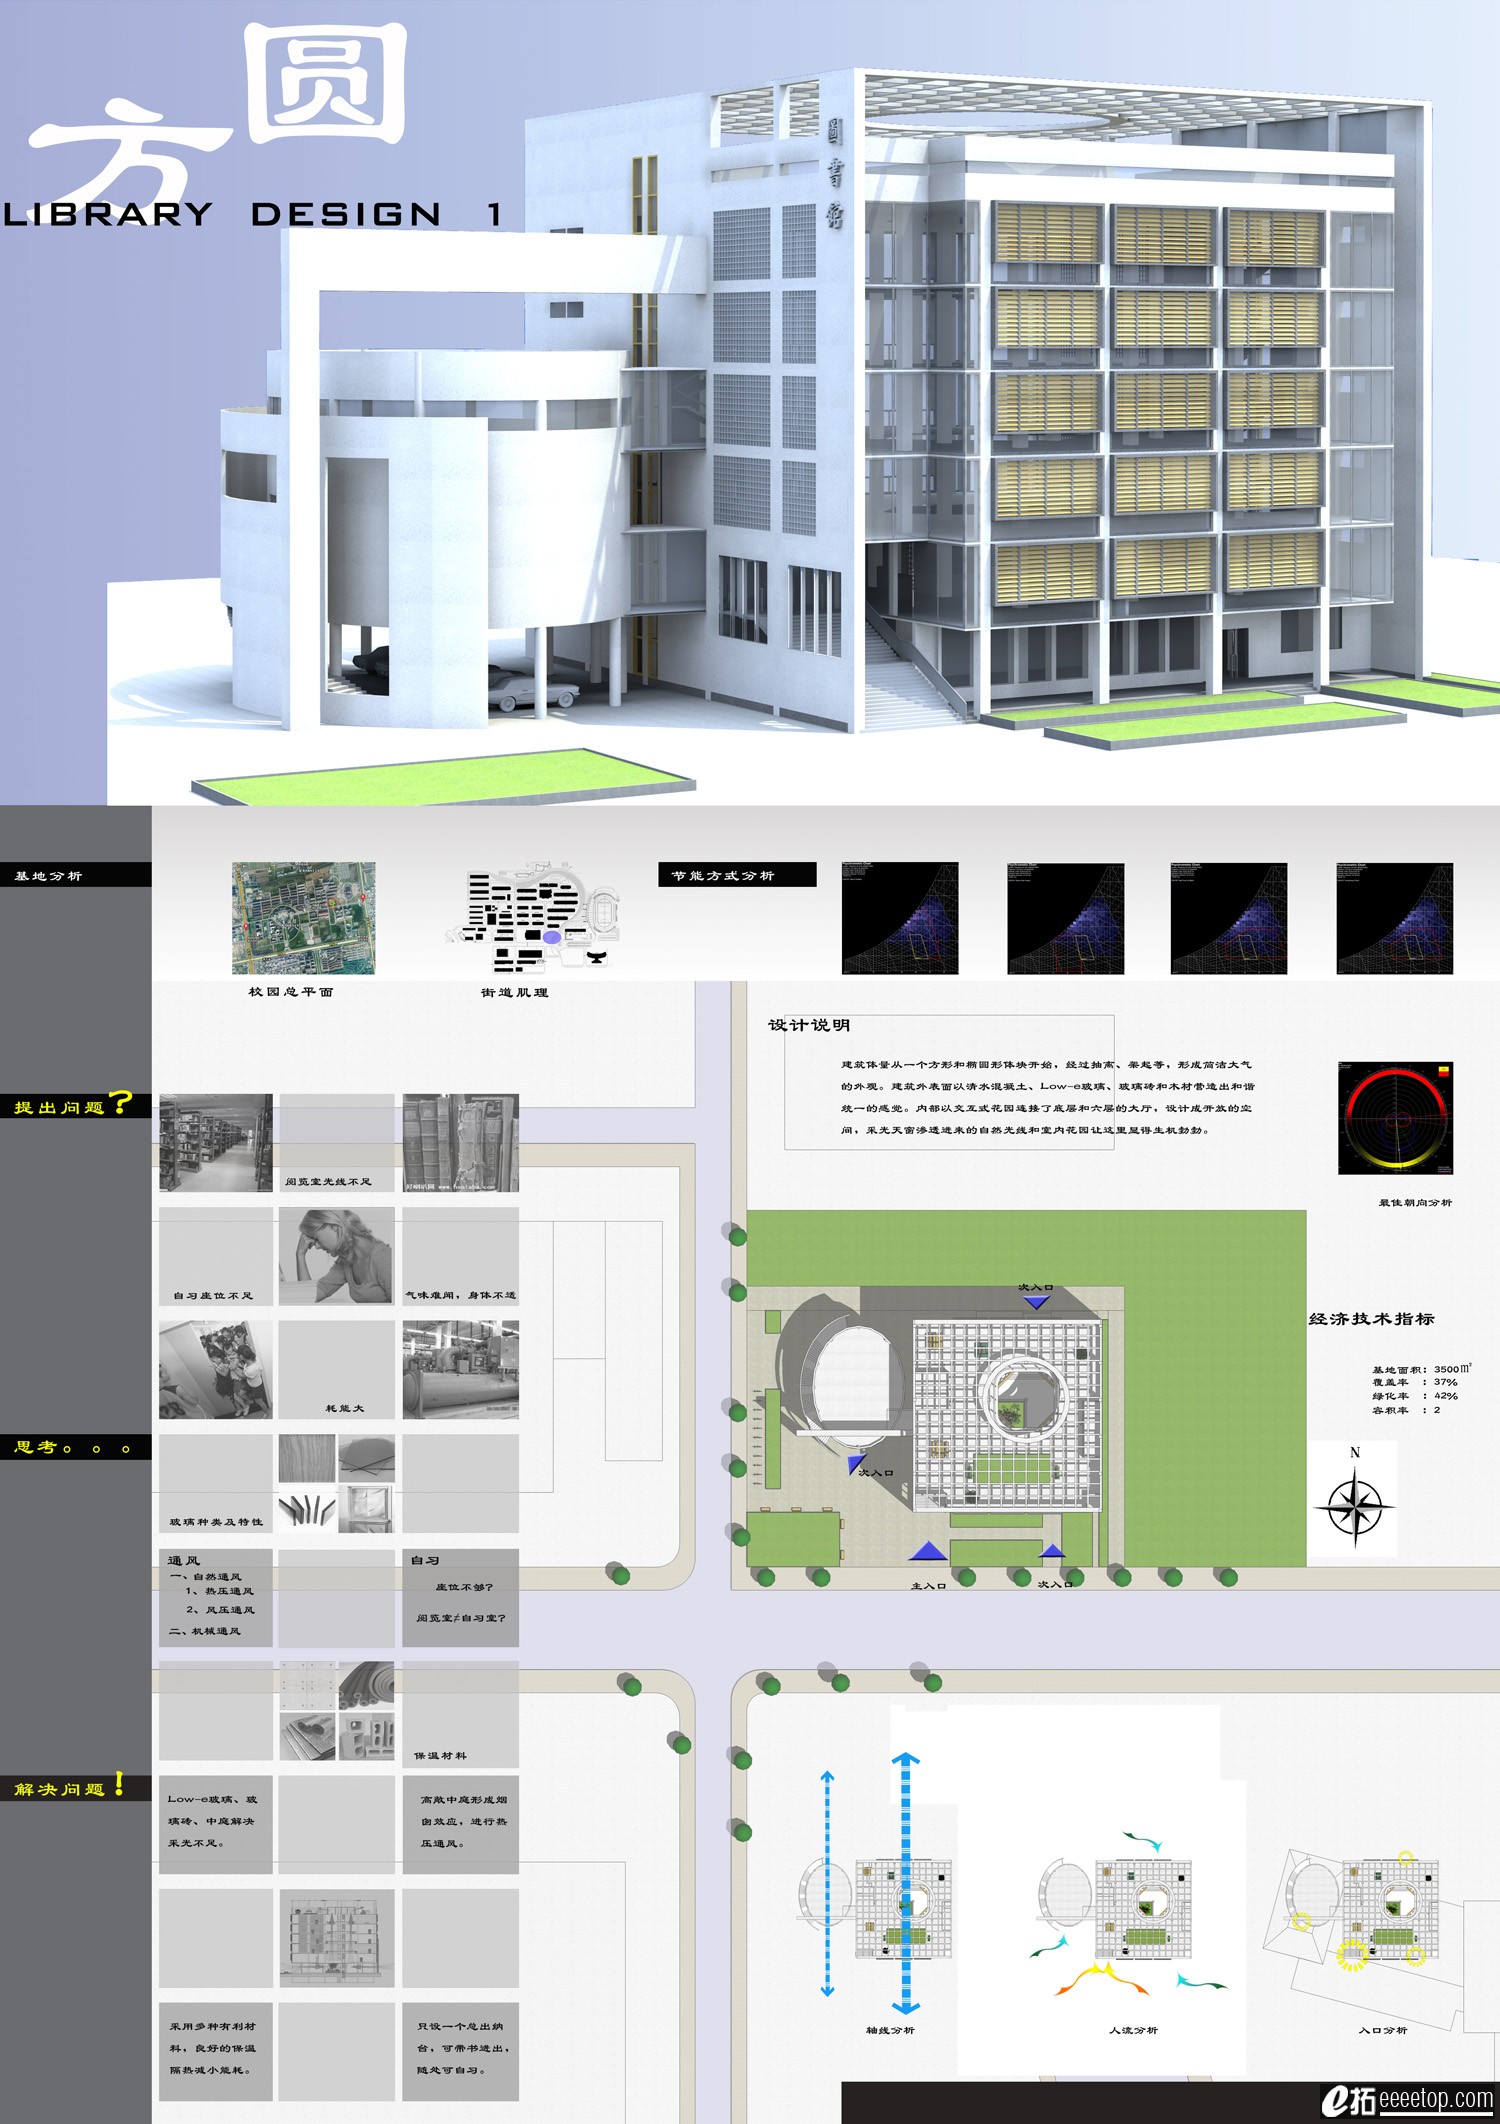 图书馆设计大作业 - 大学生设计广场 - E拓建筑